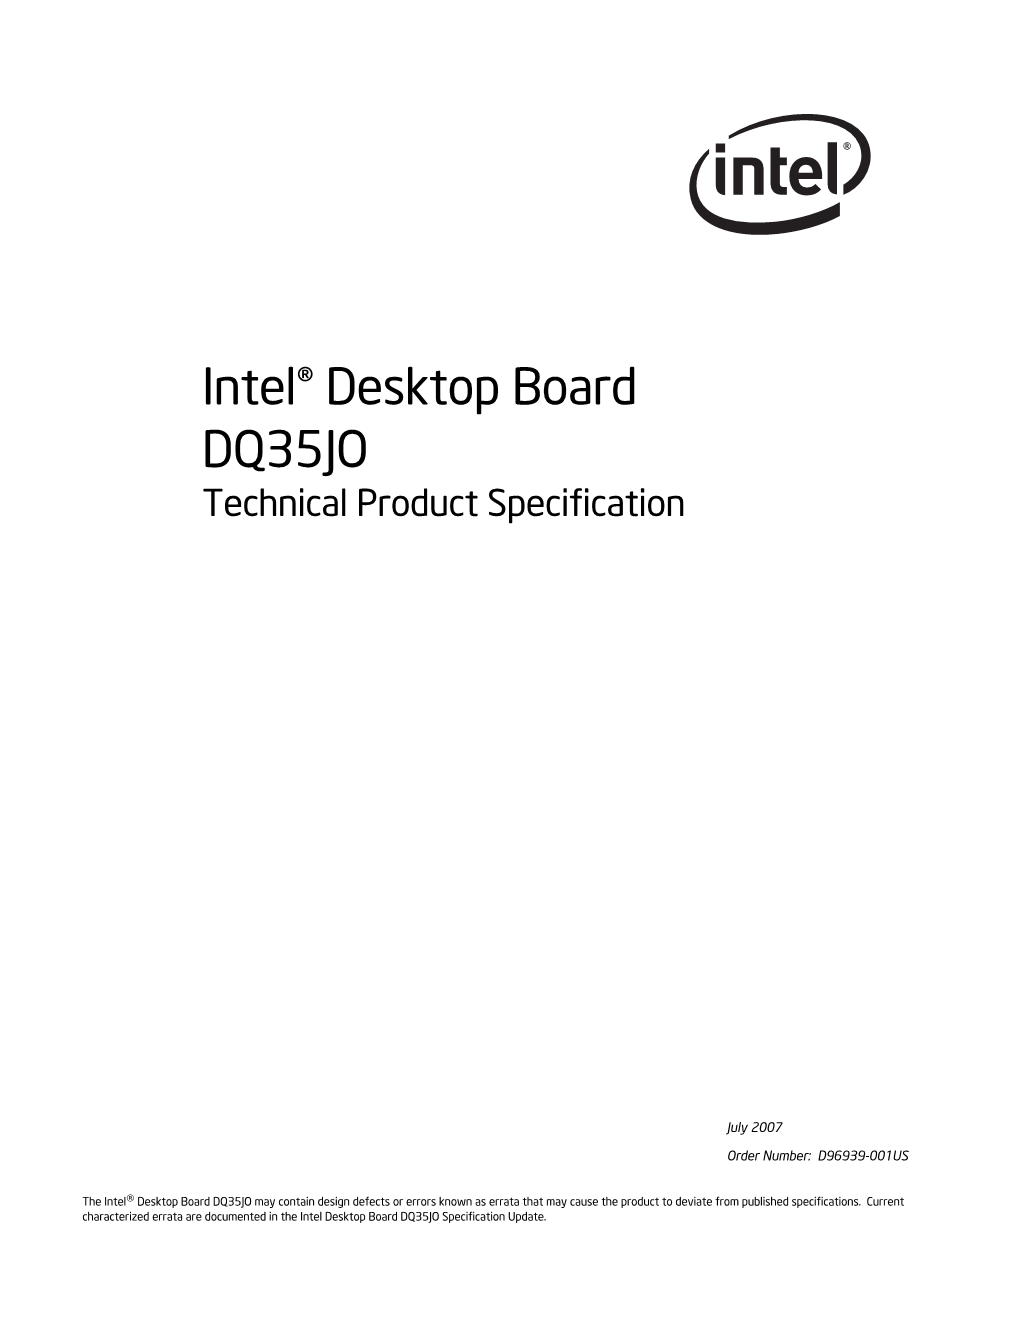 Intel® Desktop Board DQ35JO Technical Product Specification